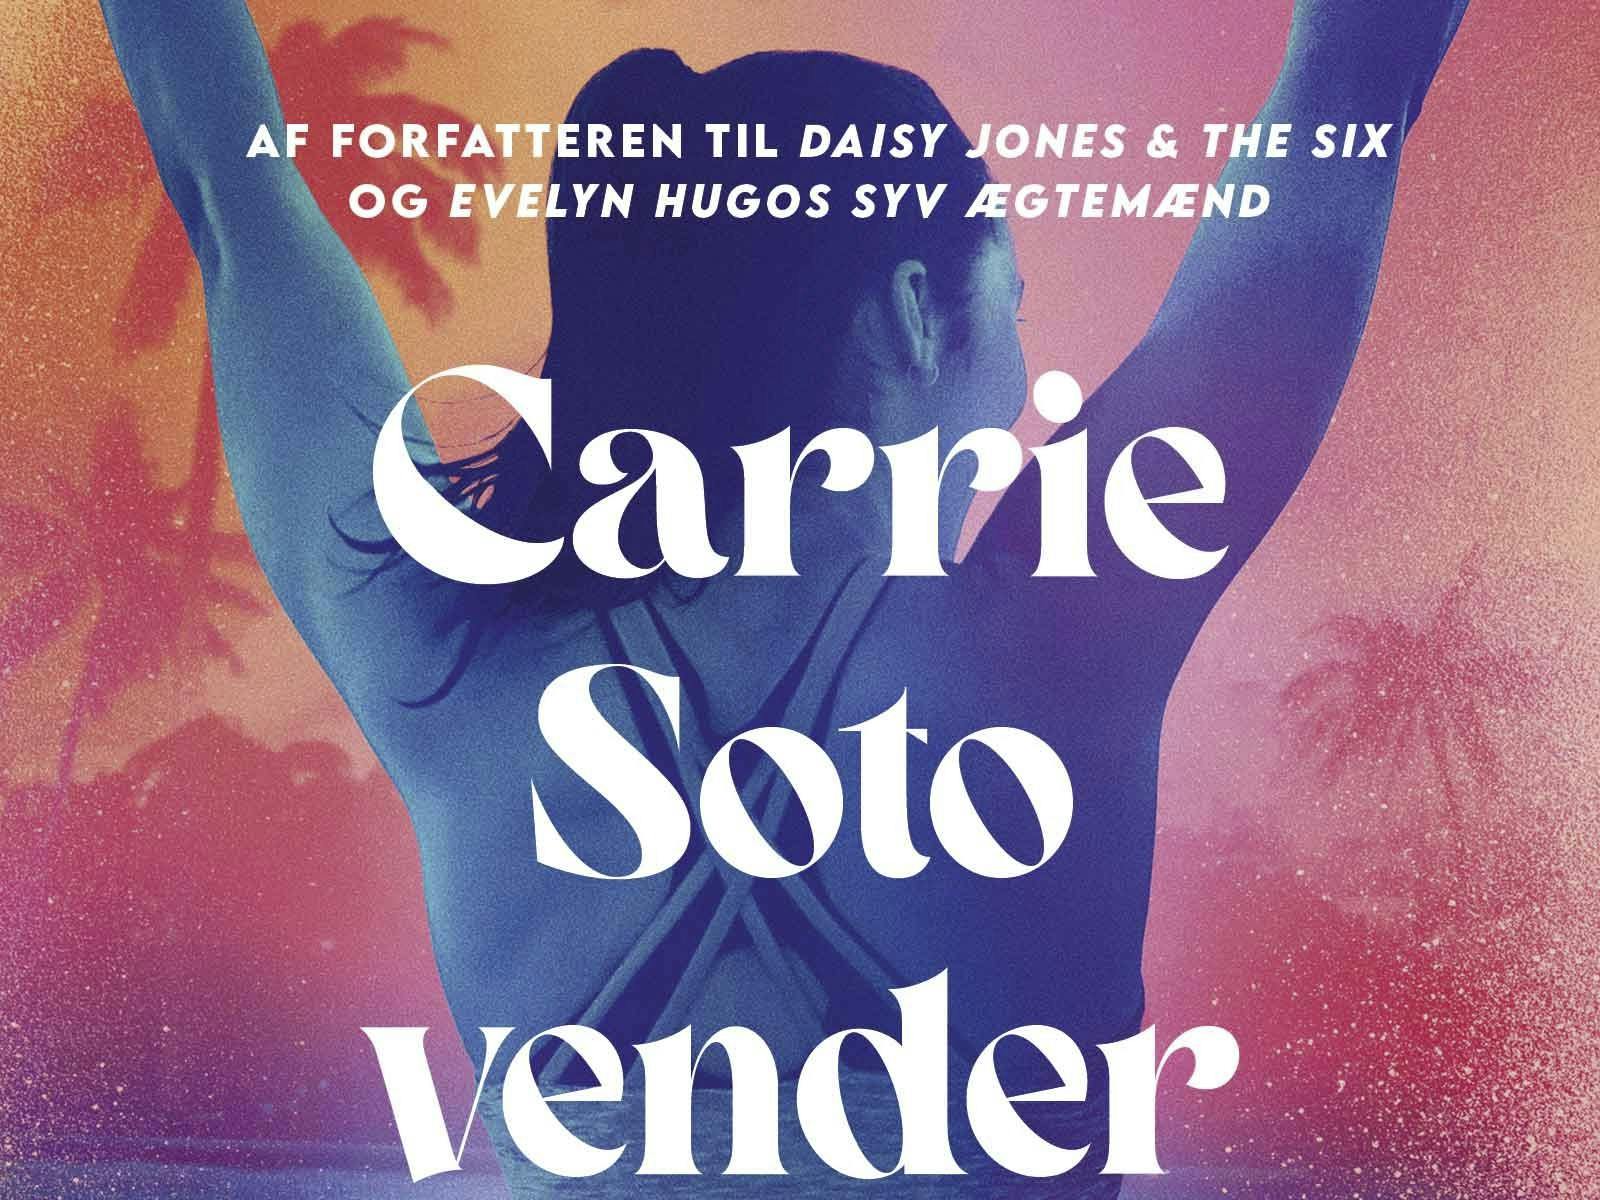 Bogen "Carrie Soto vender tilbage"